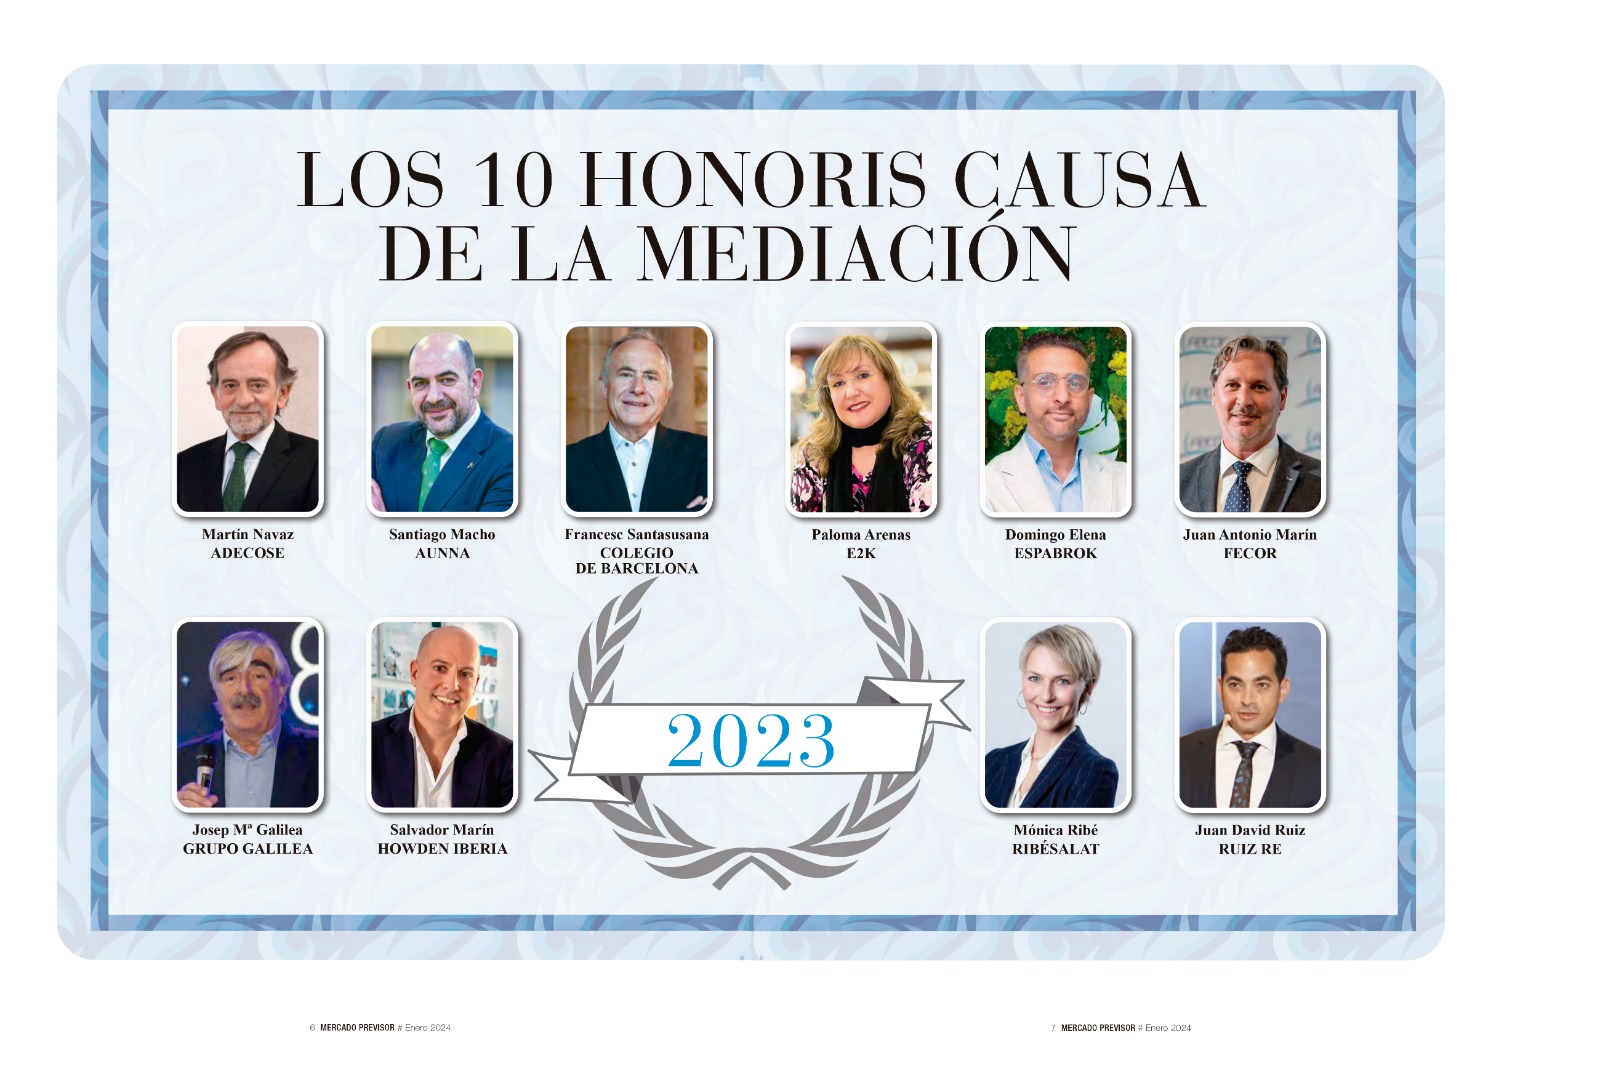 Josep Mª Galilea, uno de los 10 "honoris causa" de la medicación de seguros en 2023 6